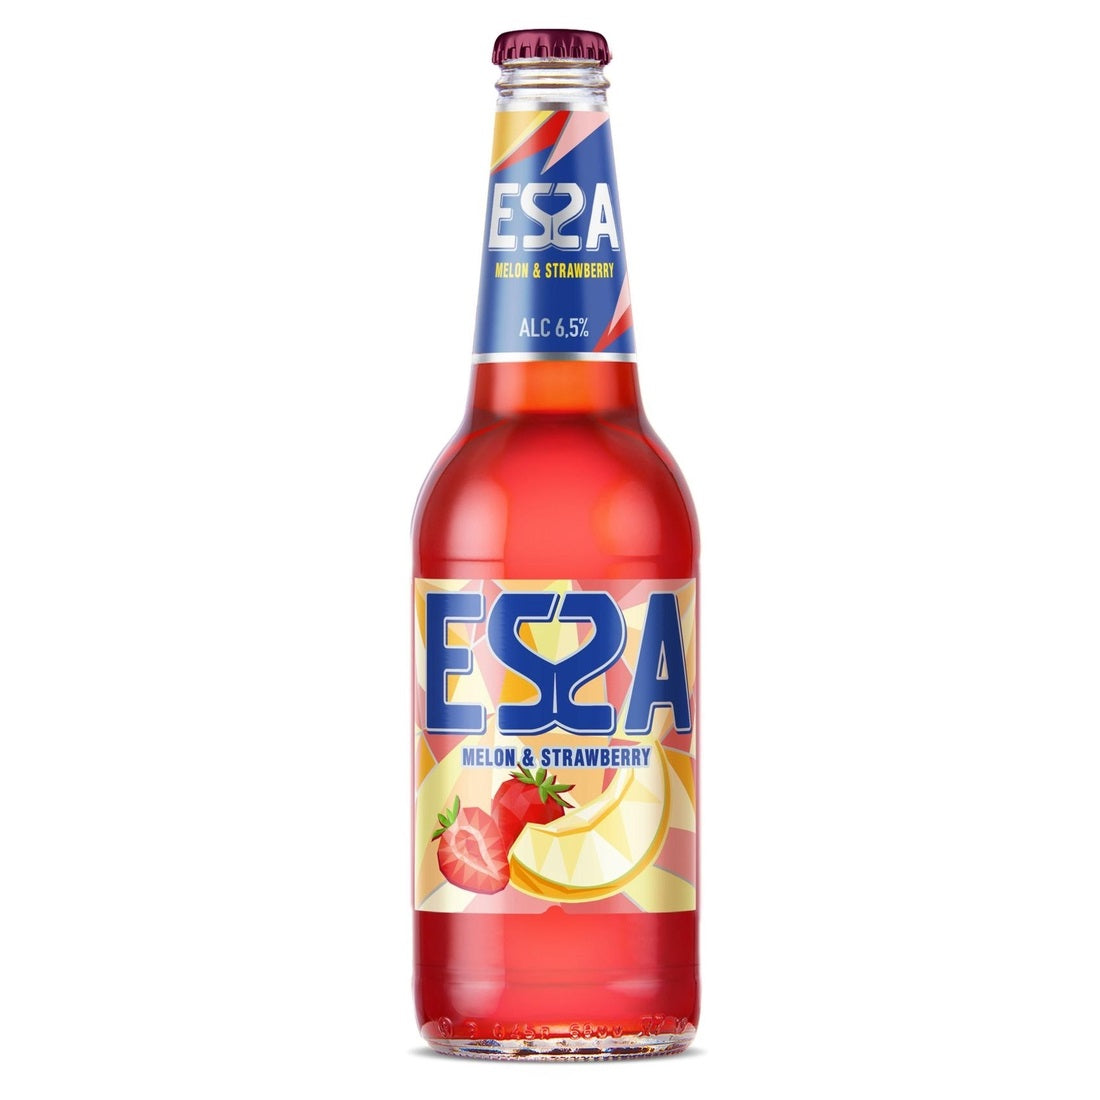 Beer drink Essa Melon-Strawberry 6.5% 0.45L